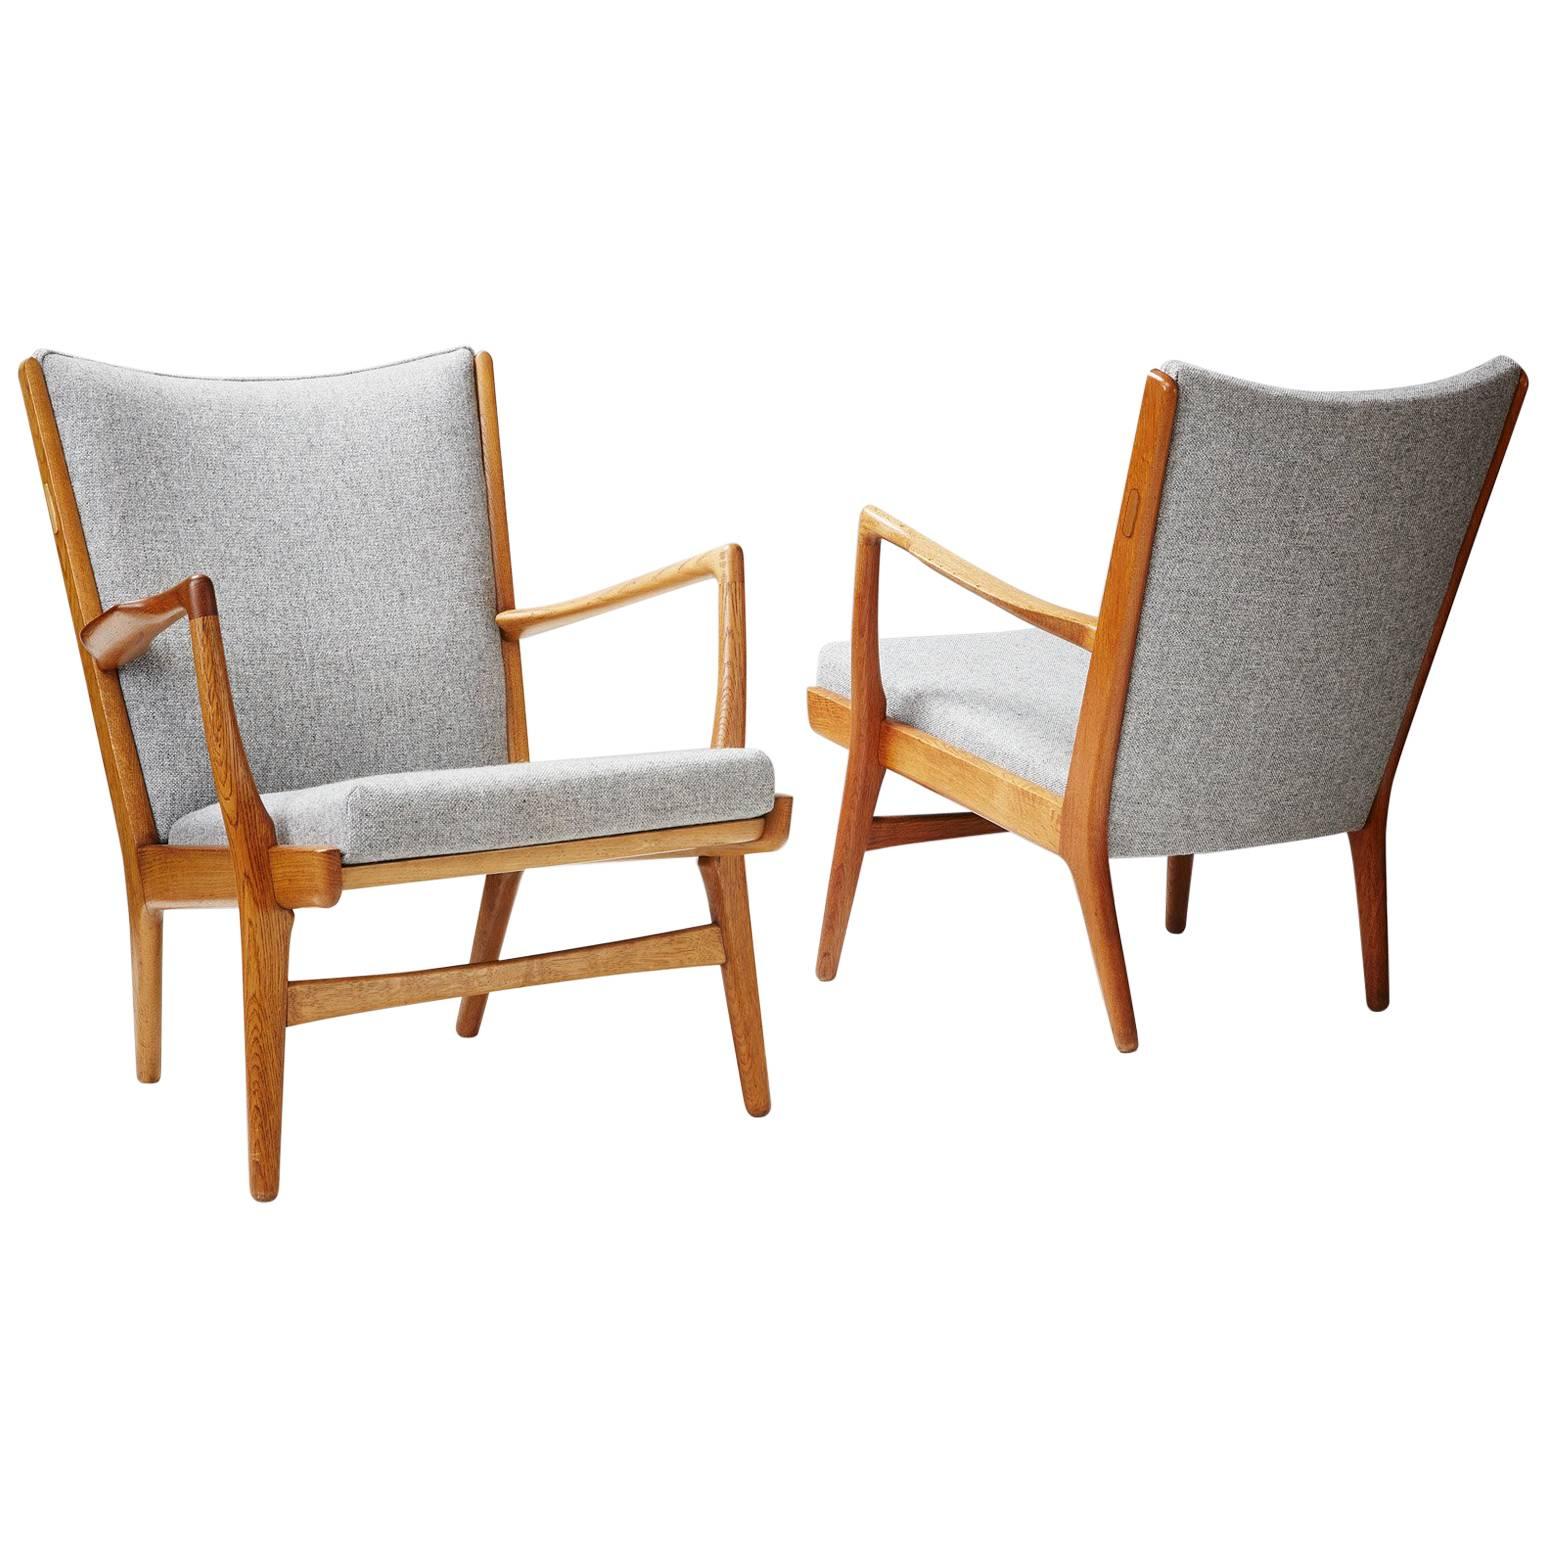 Pair of Hans Wegner AP-16 Chairs, Oak, 1952